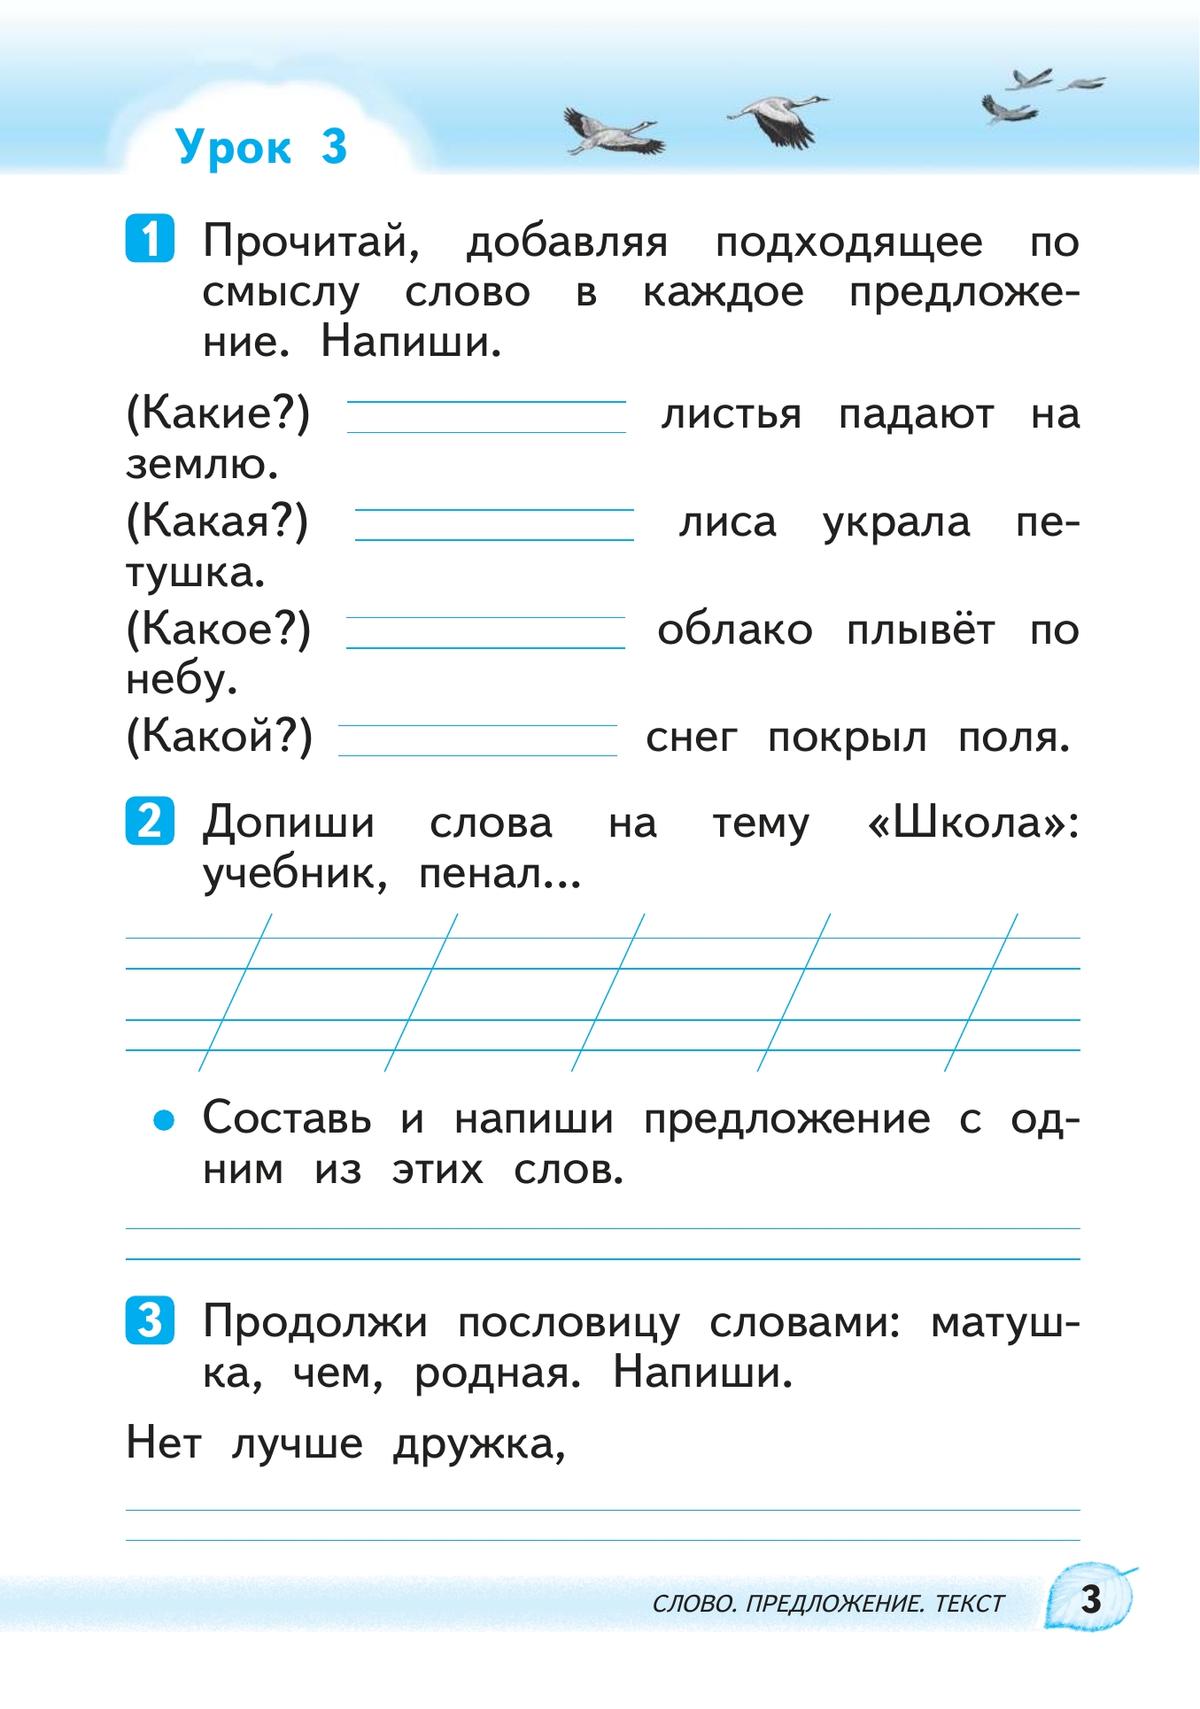 Русский язык. 1 класс. Развитие речи. Рабочая тетрадь 6